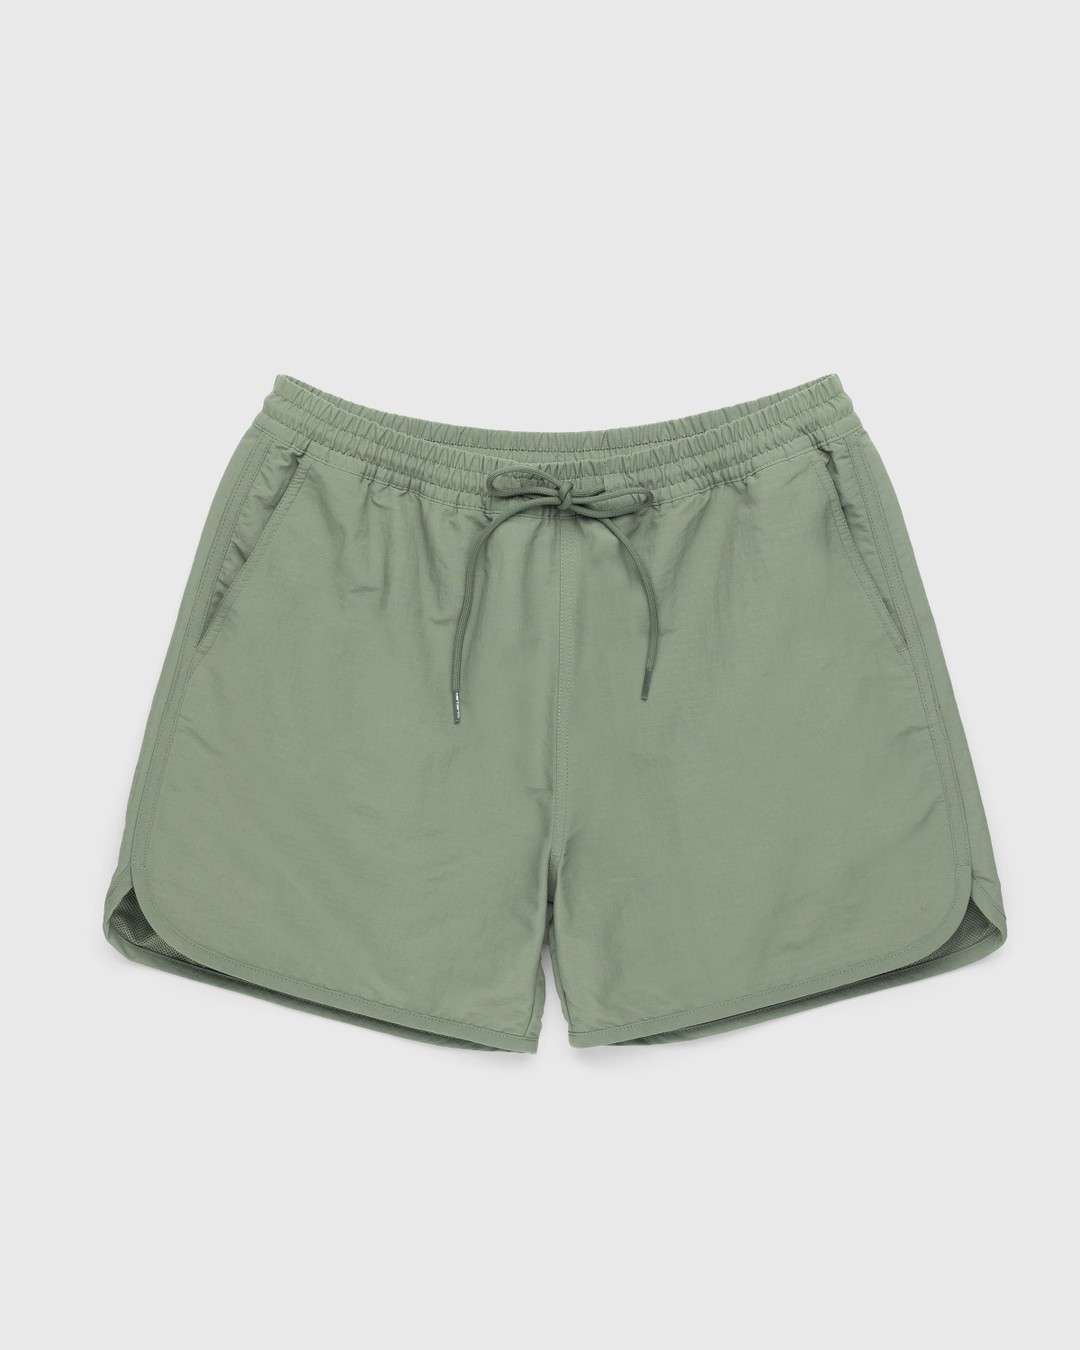 Carhartt WIP – Rune Swim Short Green - Swimwear - Green - Image 1